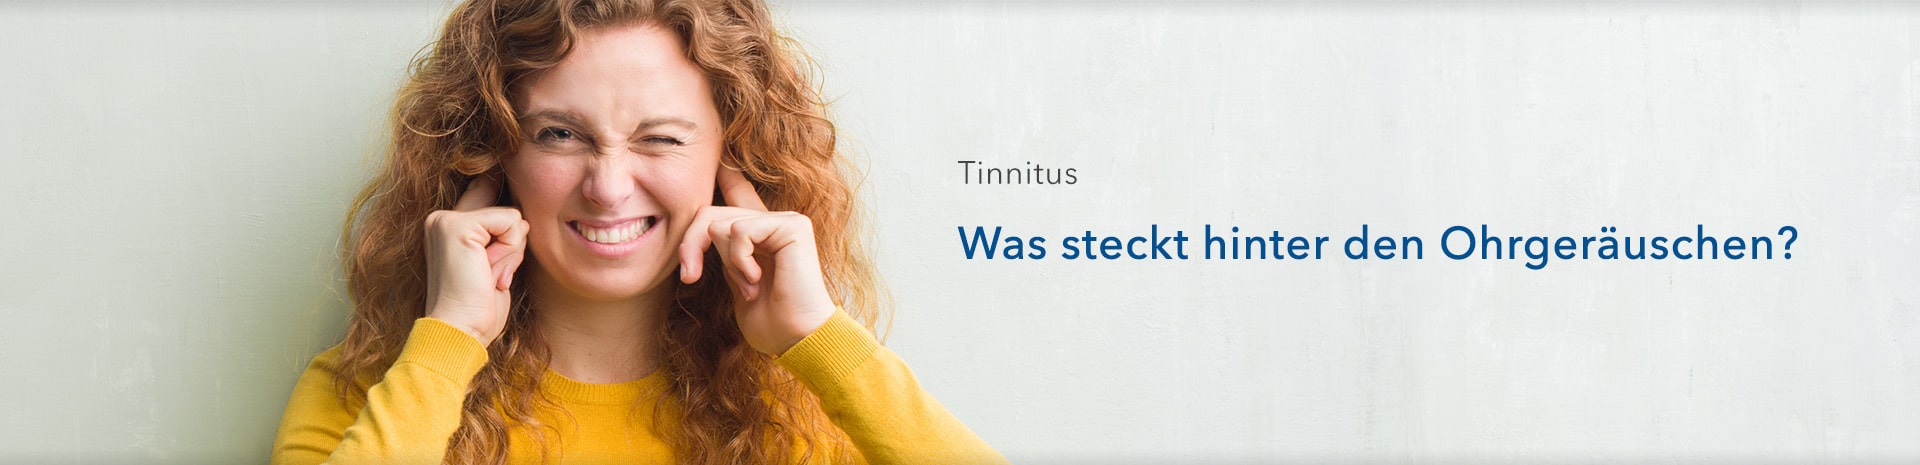 Tinnitus Ursachen, Symptome und Behandlung